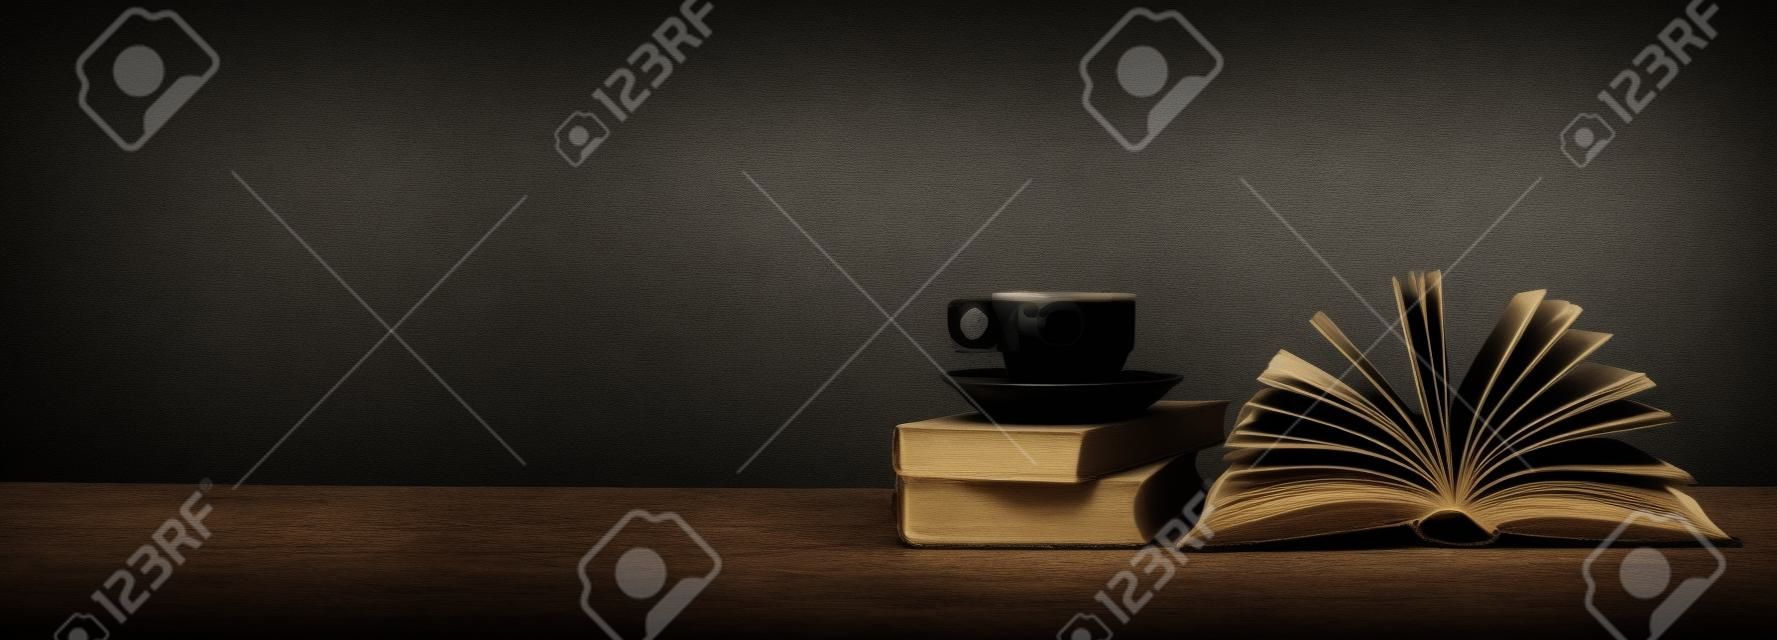 열린 된 책, 지저분한 배경, 파노라마, 복사본 공간에 커피 한잔